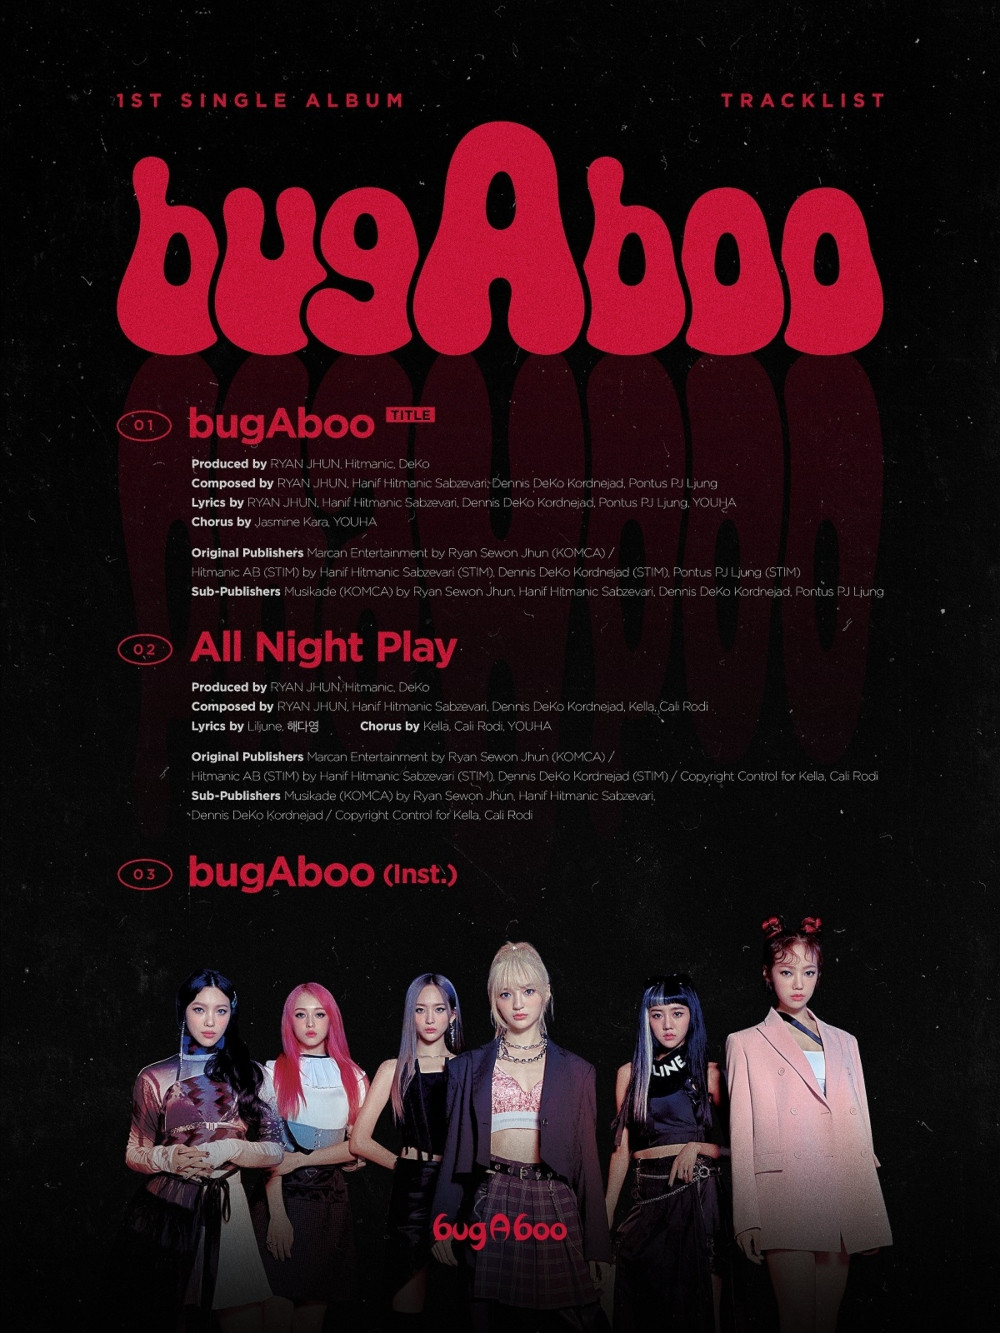 [Дебют] Женская группа bugAboo сингл-альбом "bugAboo": музыкальный клип